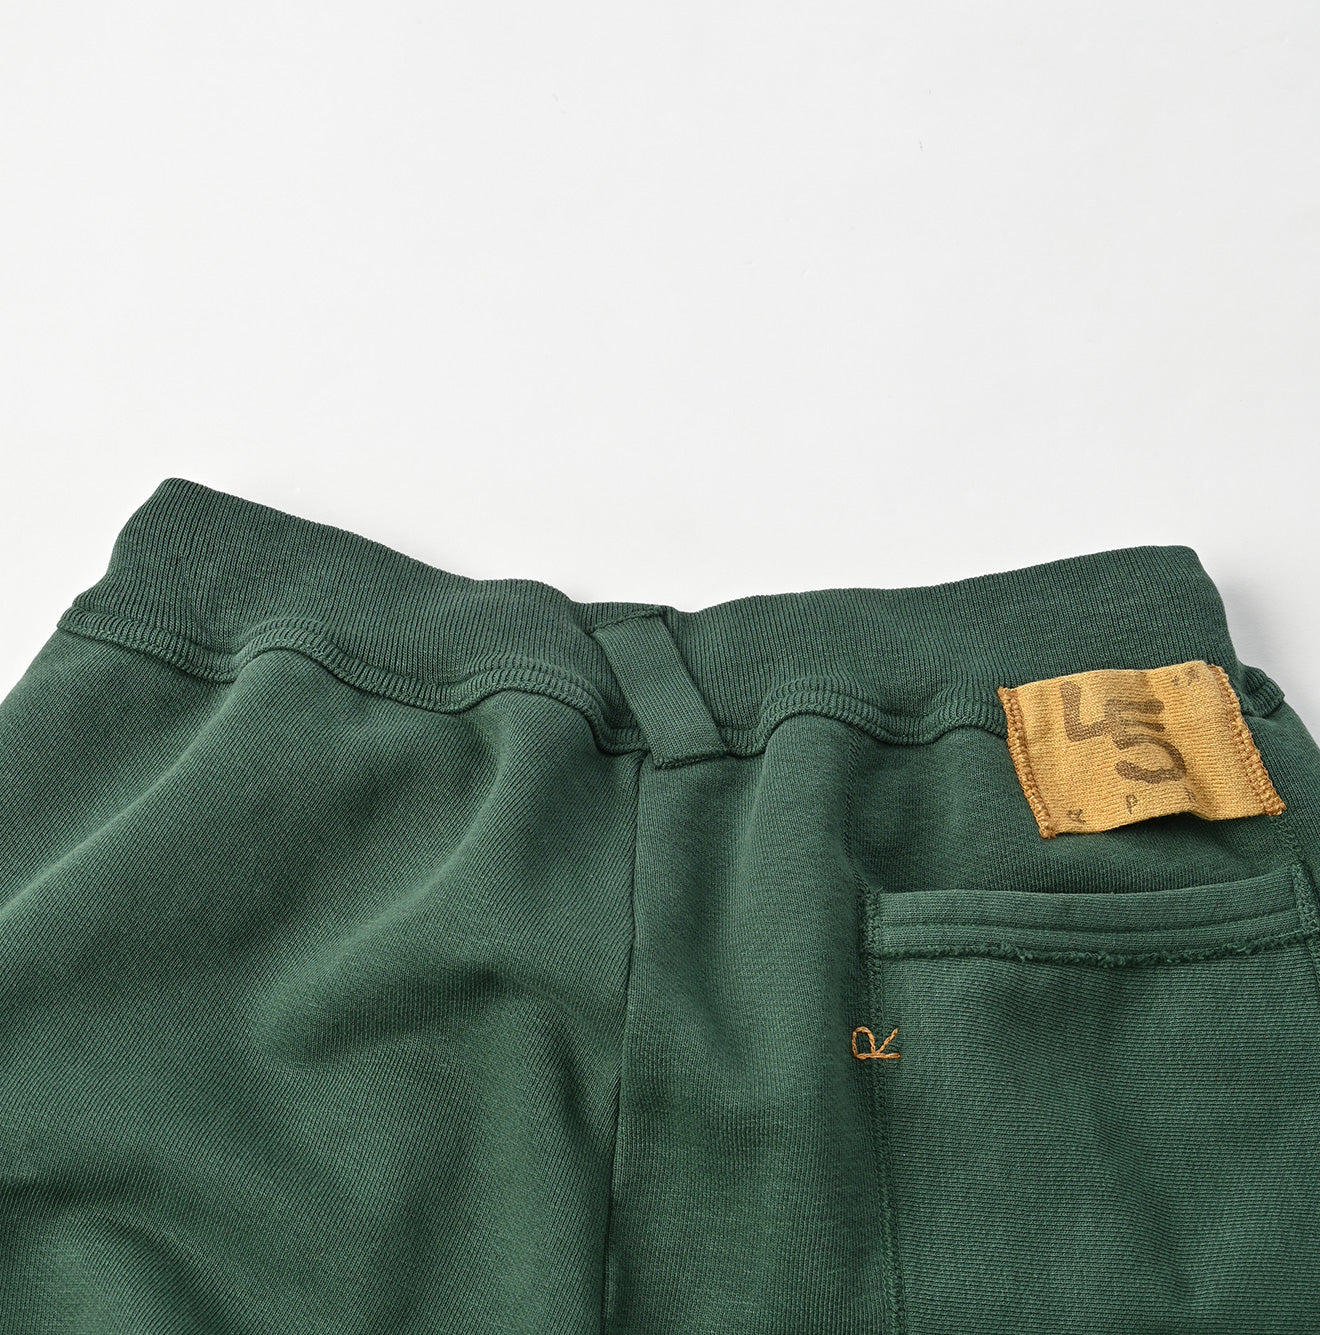 Indigo Premium Cotton Fleece Pants Zyu – 45R Global